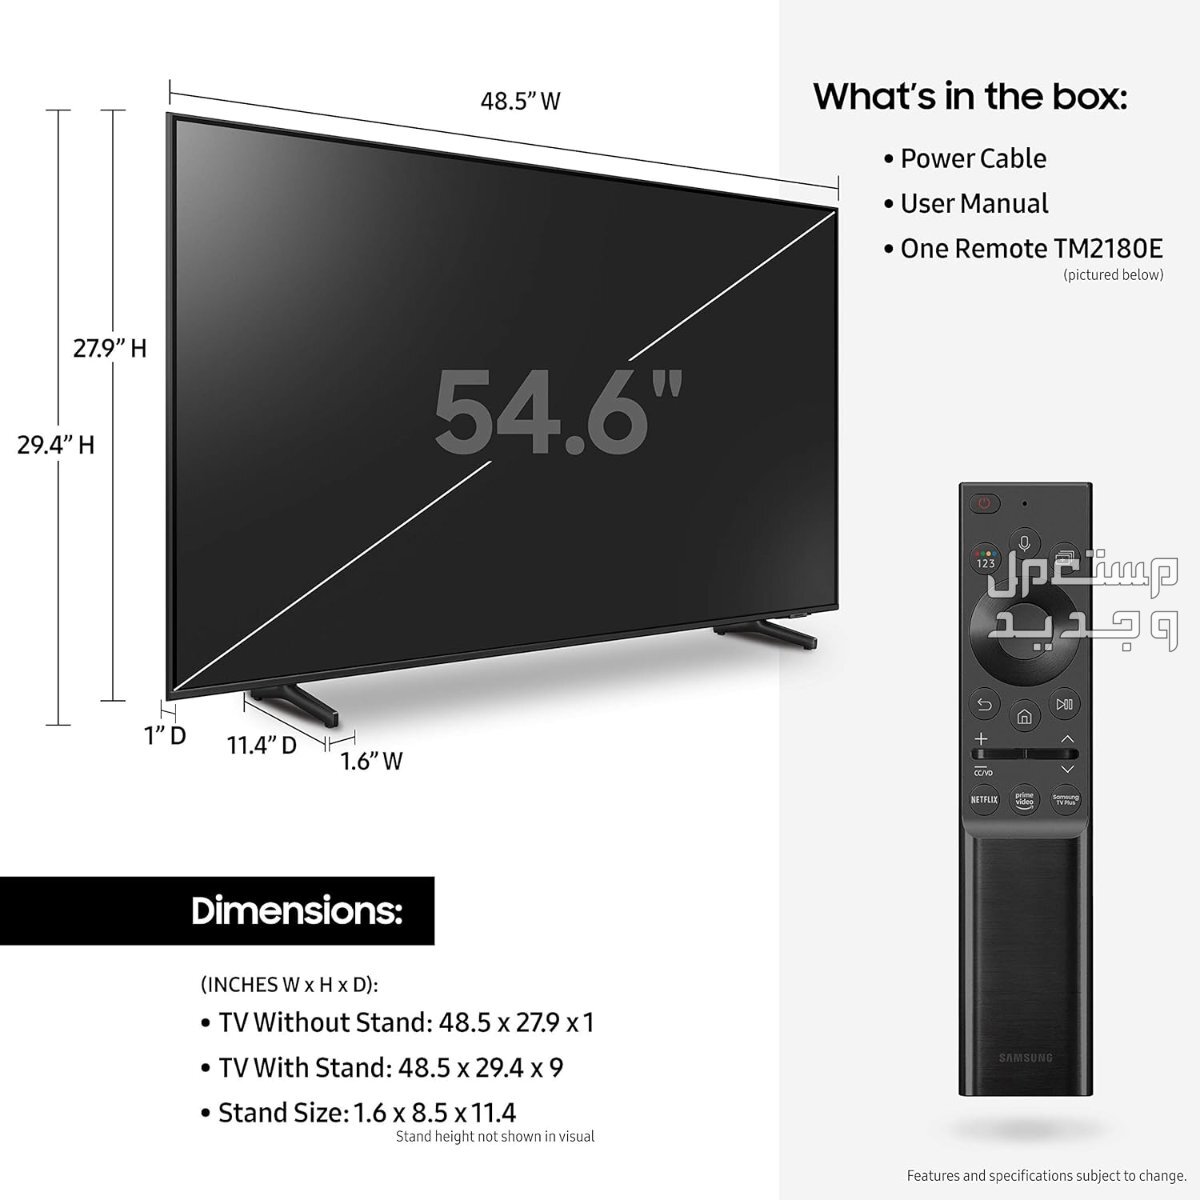 انواع تلفزيون 55 بوصة بالمواصفات والصور والأسعار في عمان تلفزيون 55 بوصة ماركة سامسونج موديل QA55Q60ABUXUM